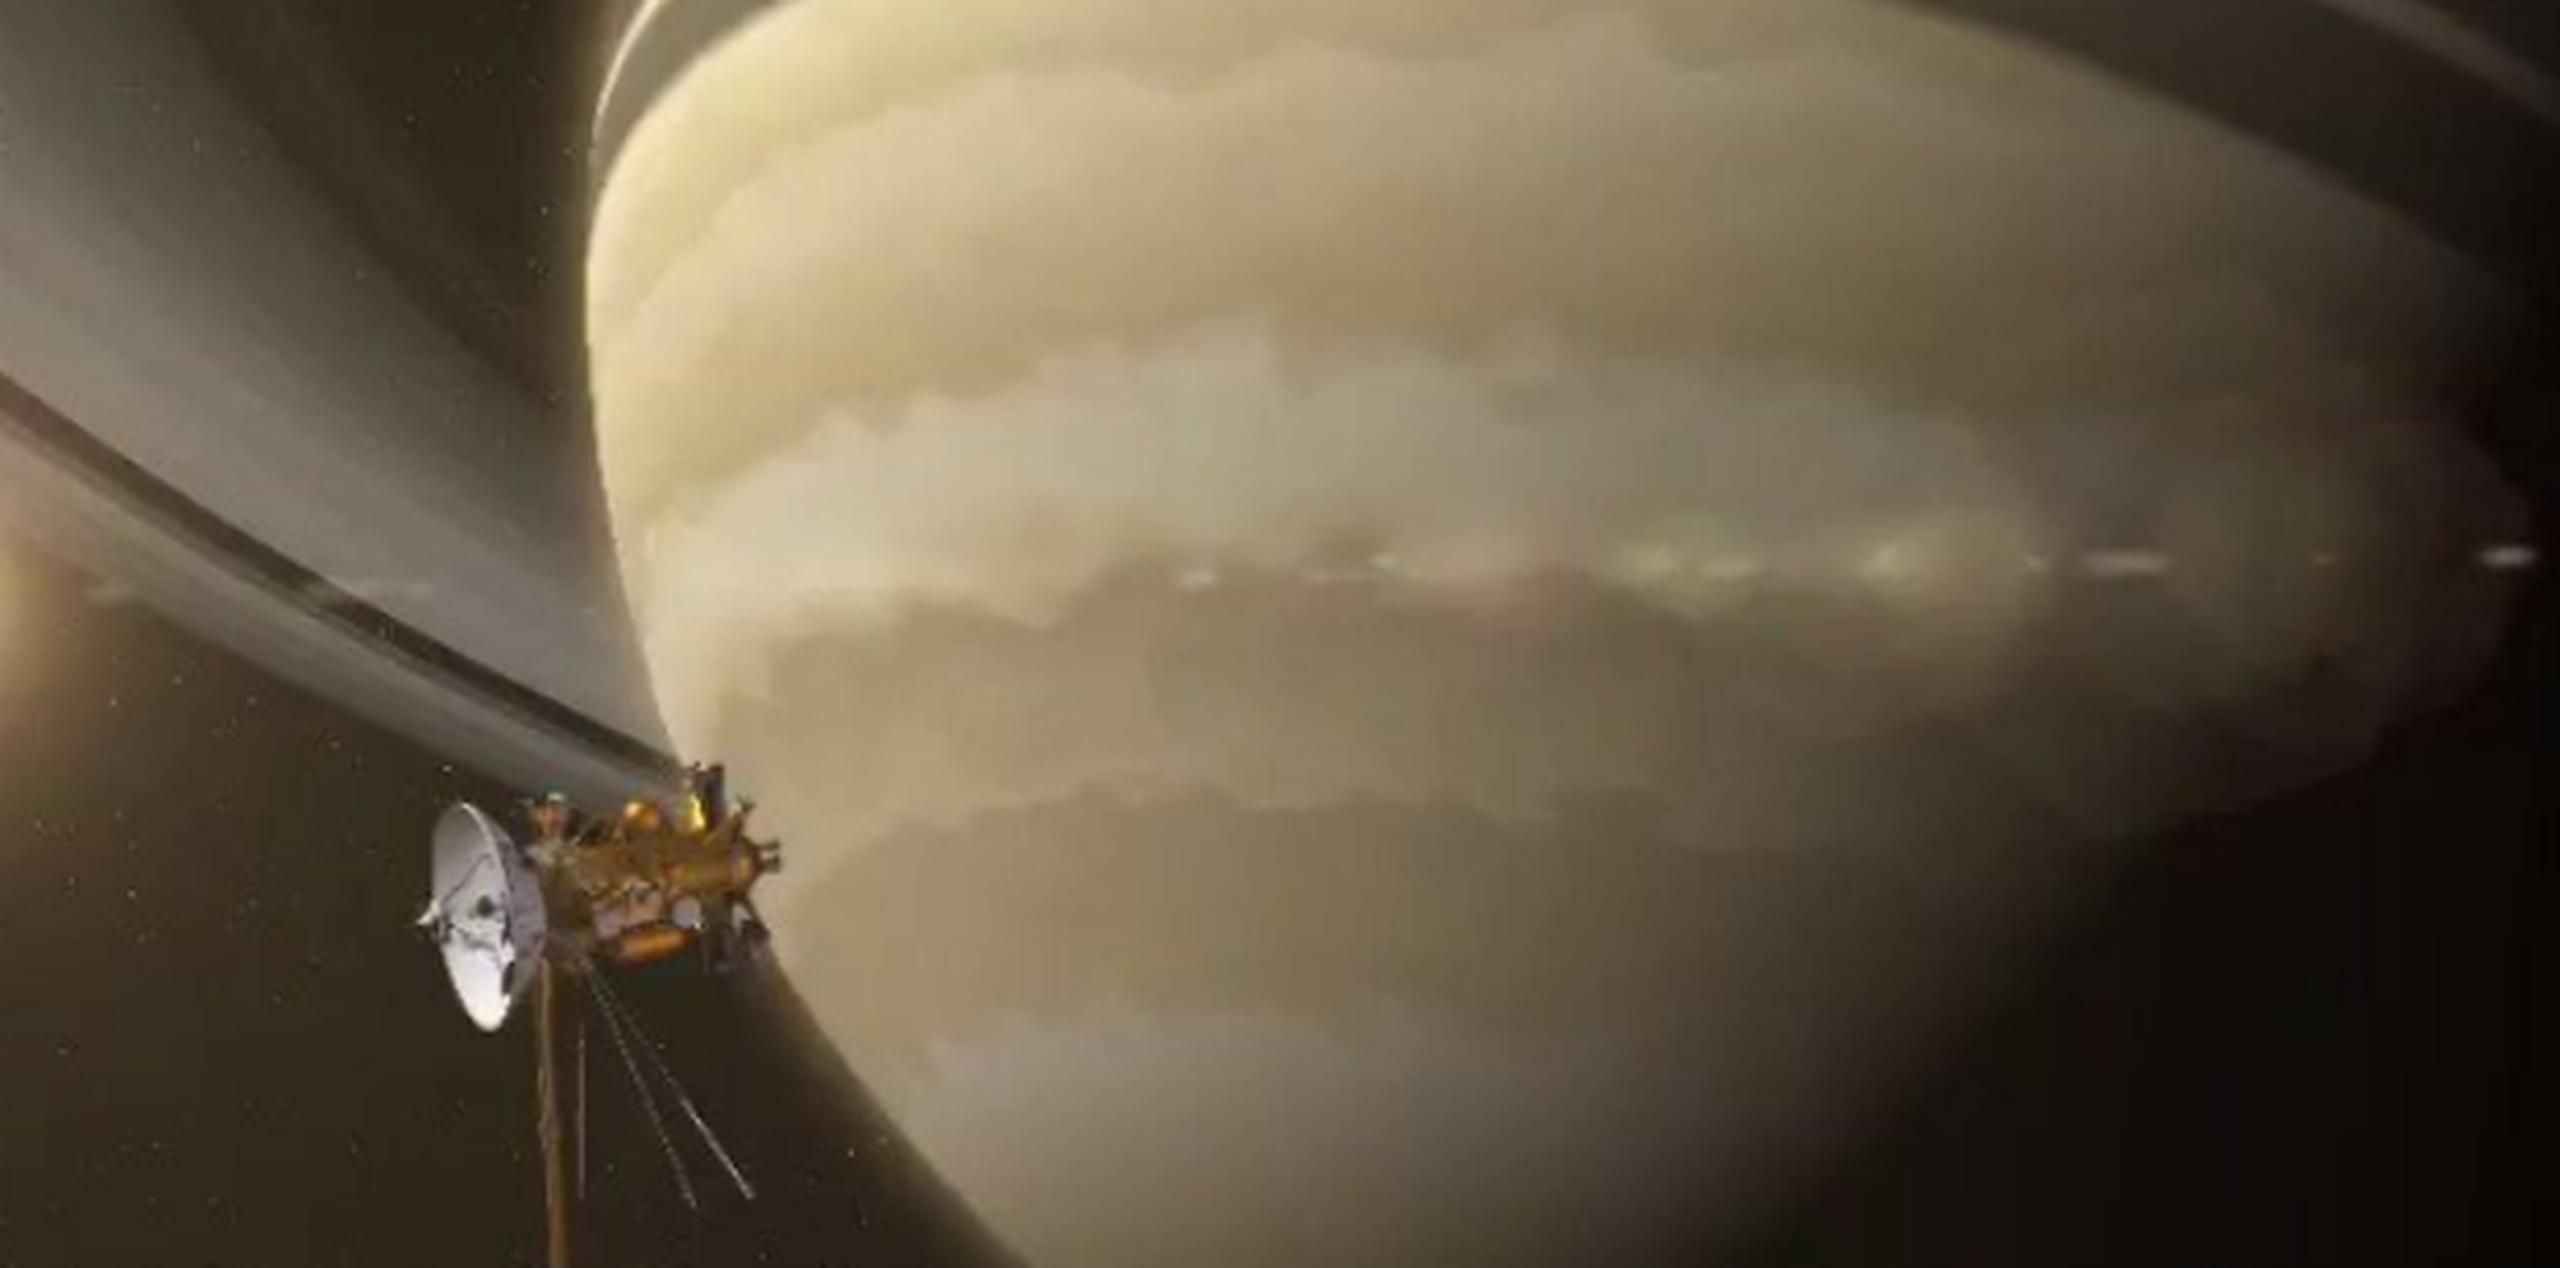 Tras cuatro años de trabajo, la nave Cassini completó su misión inicial de explorar el sistema solar de Saturno en 2008. (NASA)